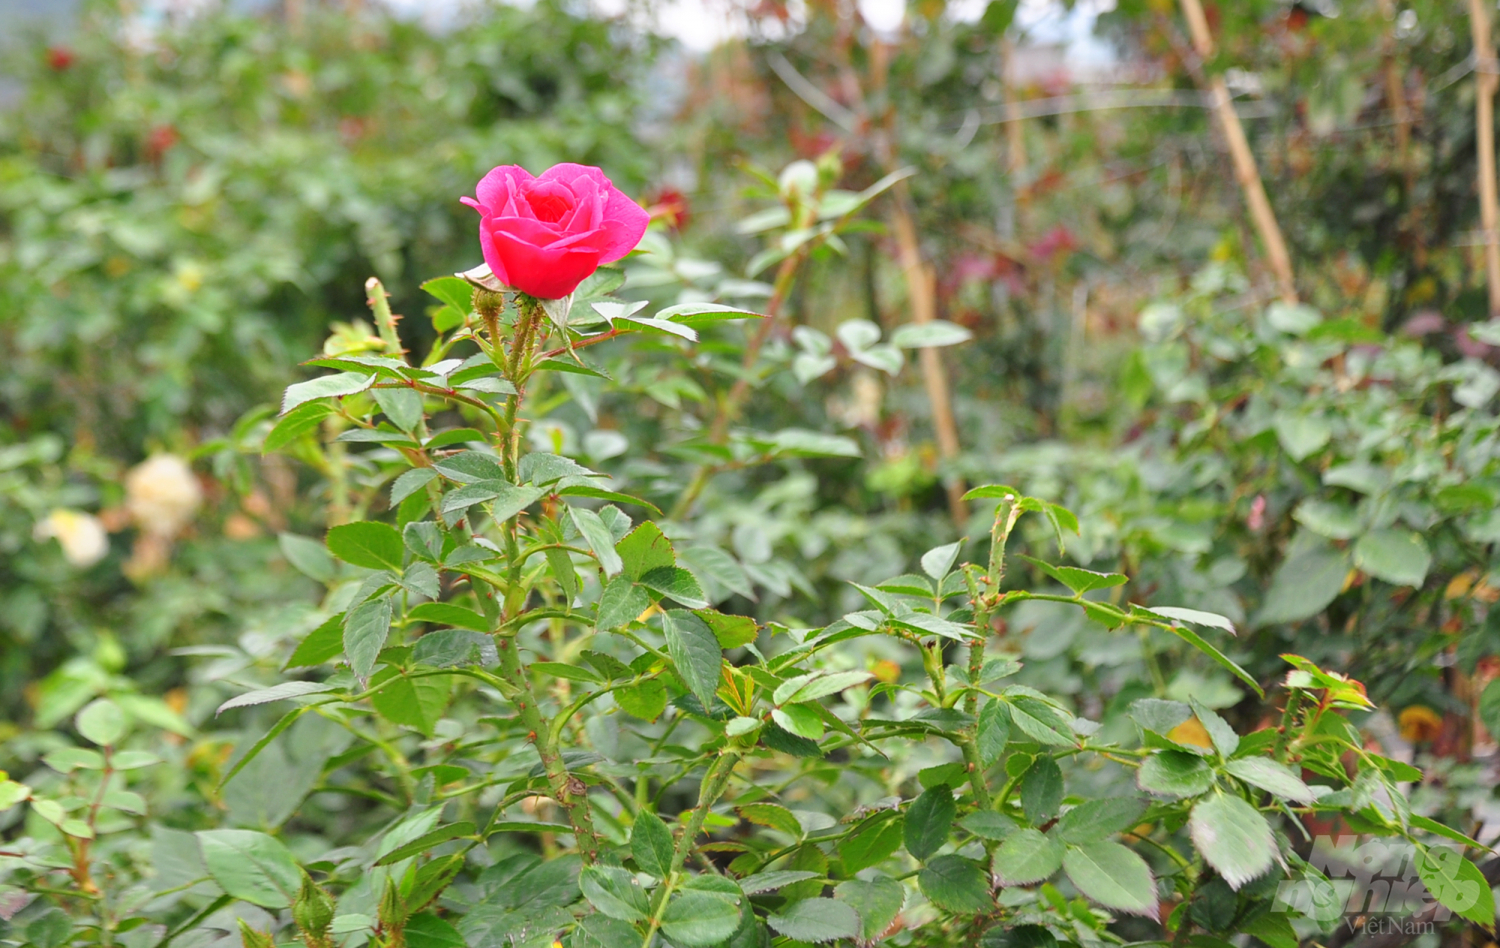 'Ở Đà Lạt, Đức Trọng có khí hậu quá lý tưởng để trồng hoa hồng. Do vậy, cây đưa từ nhiều quốc gia khác về cũng bén rễ nhanh, phát triển mạnh', chủ vườn 37 tuổi chia sẻ.